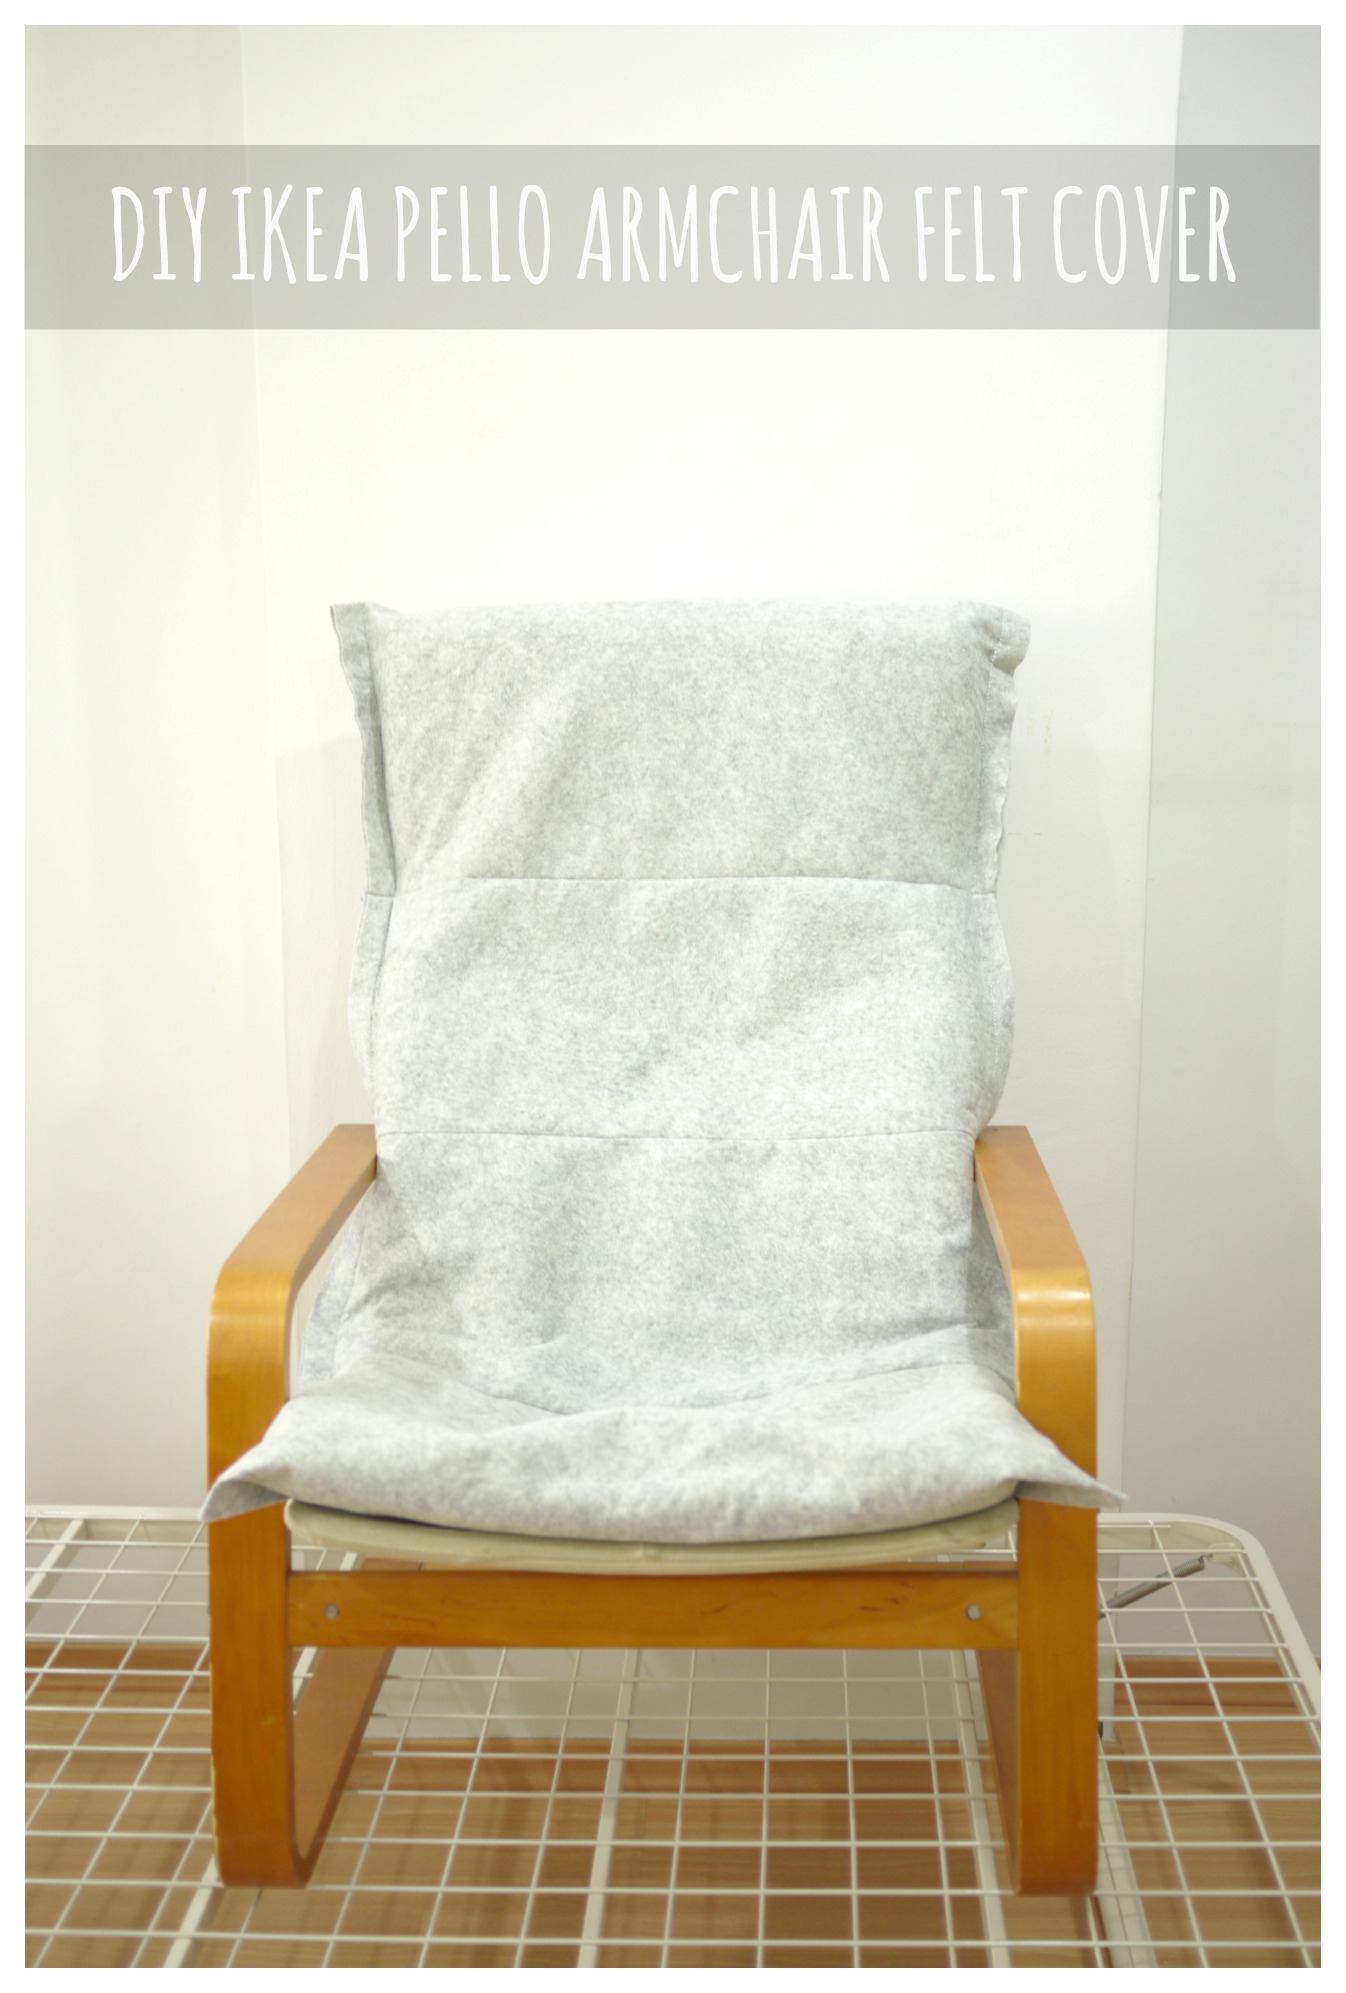 Diy Ikea Pello Poang Chair Felt Cover Mono And Co